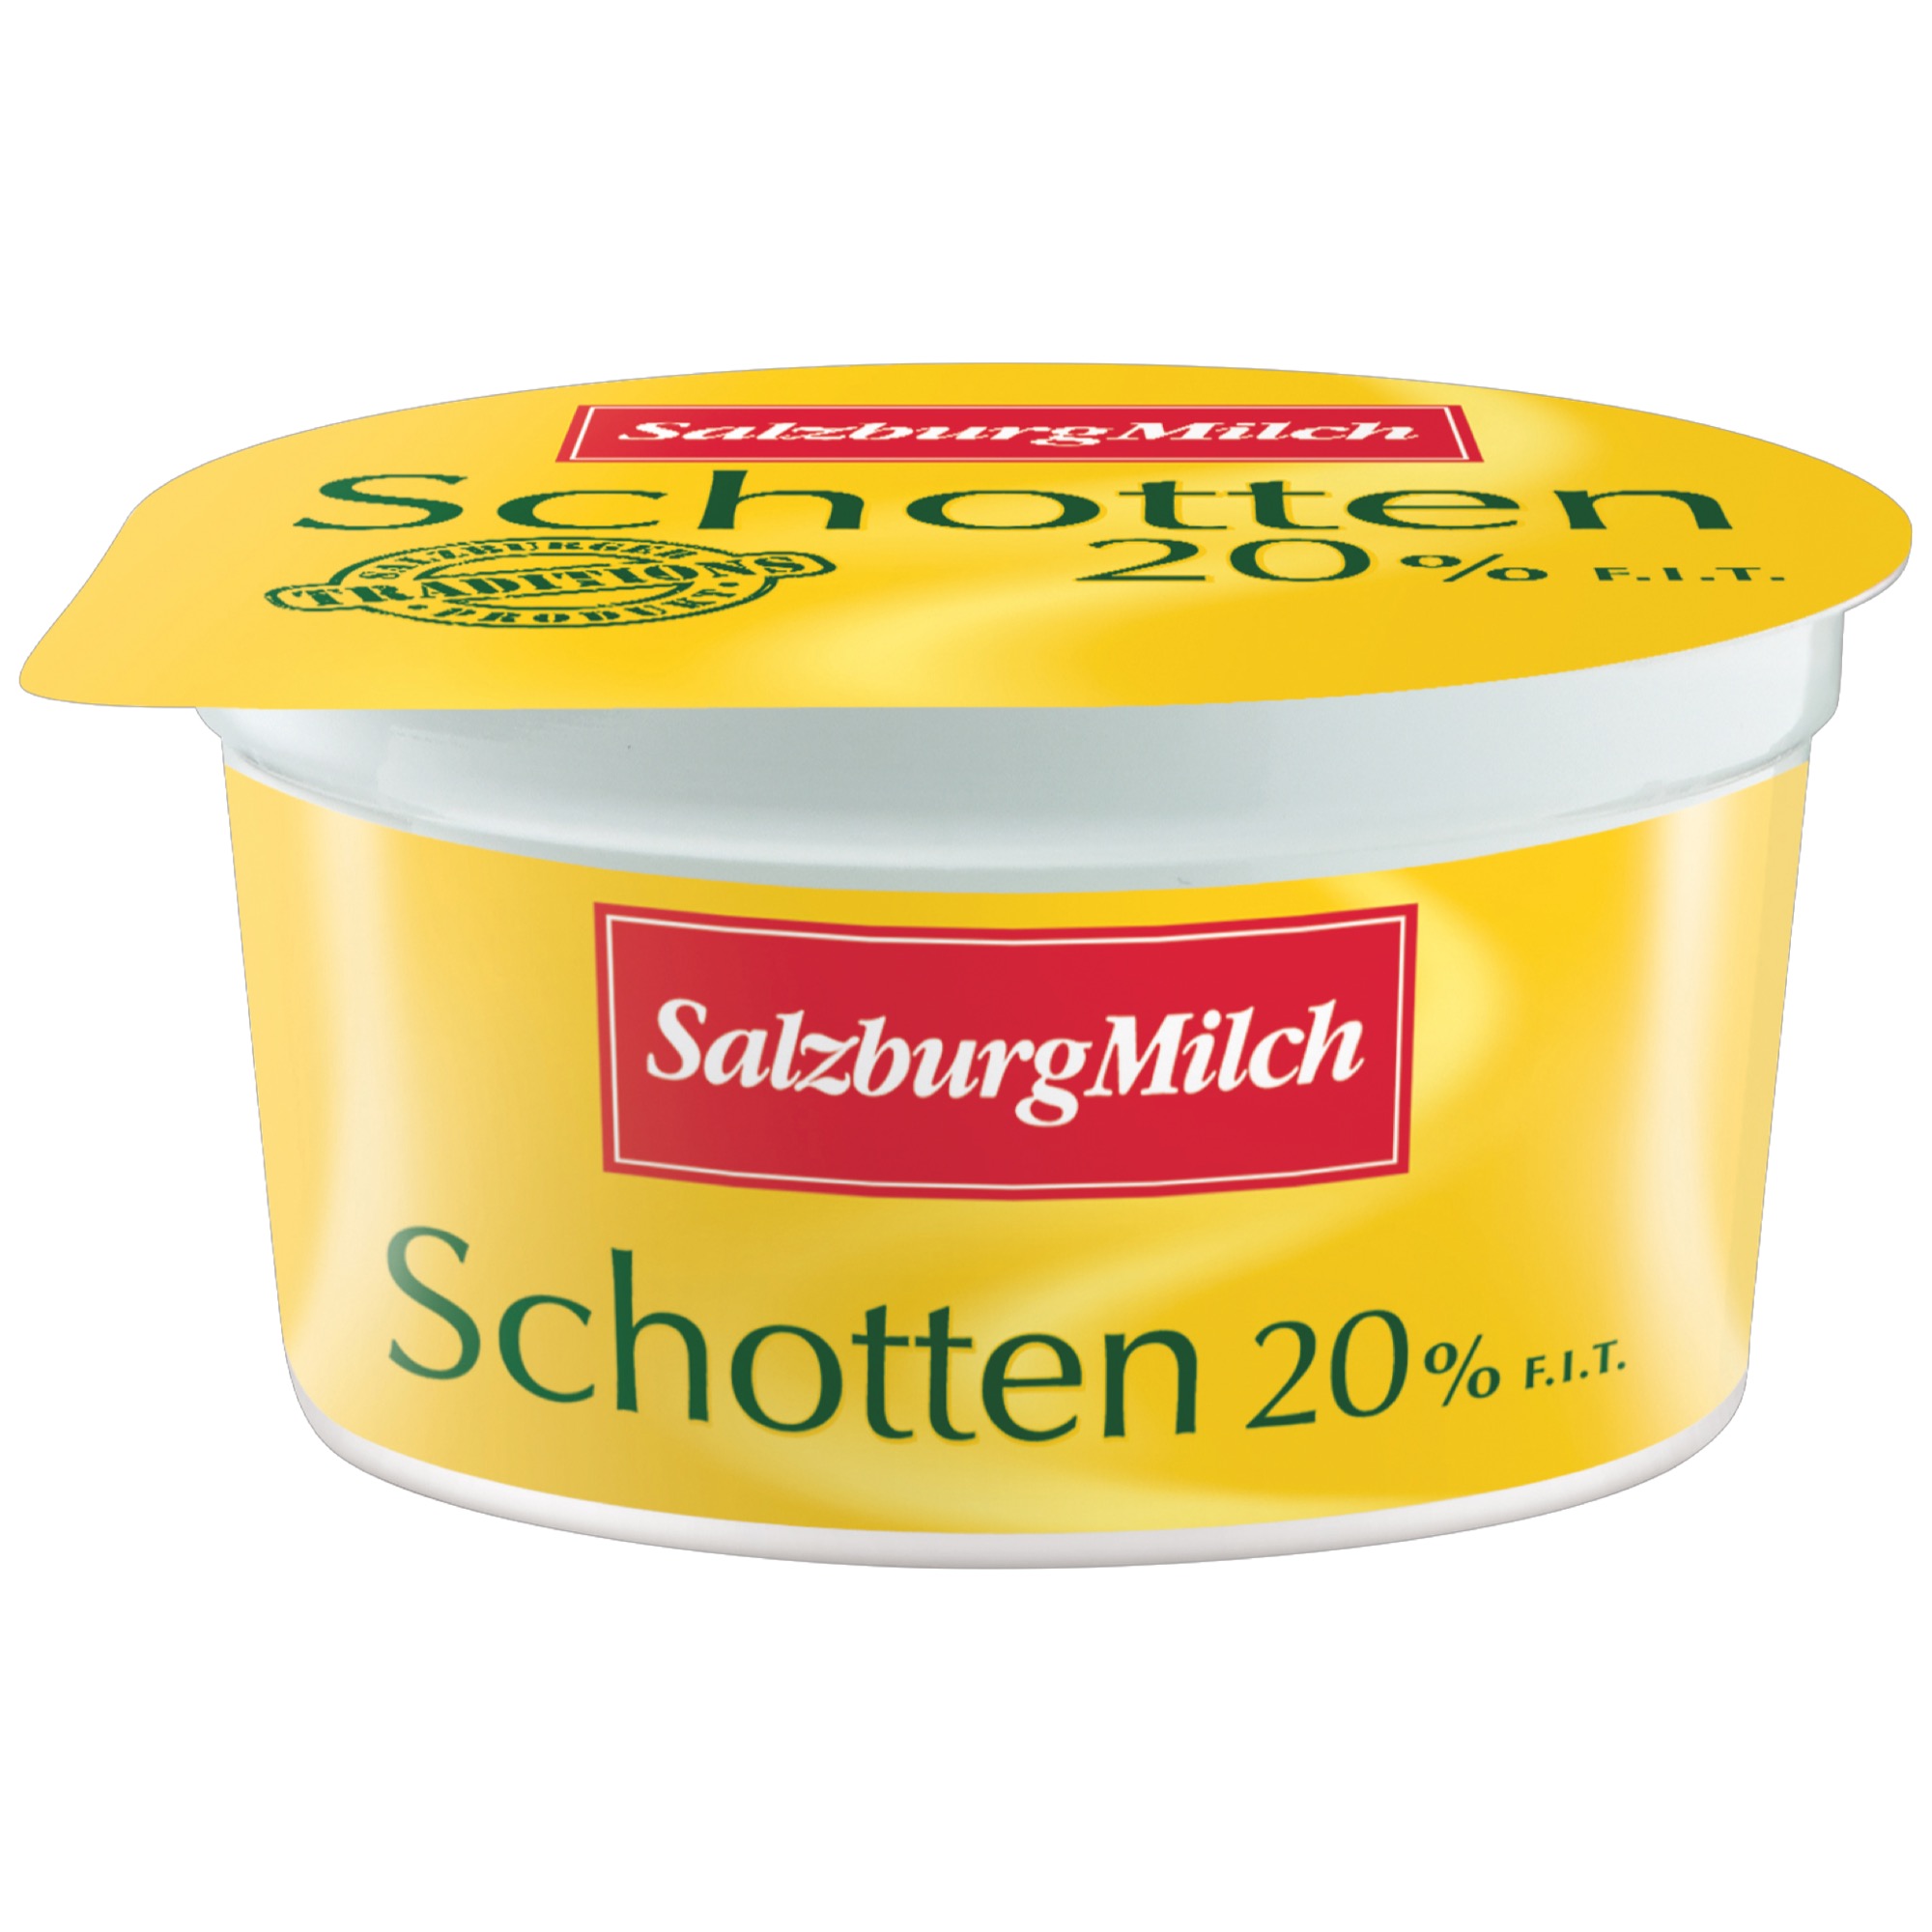 SalzburgMilch Schotten 20% 200g